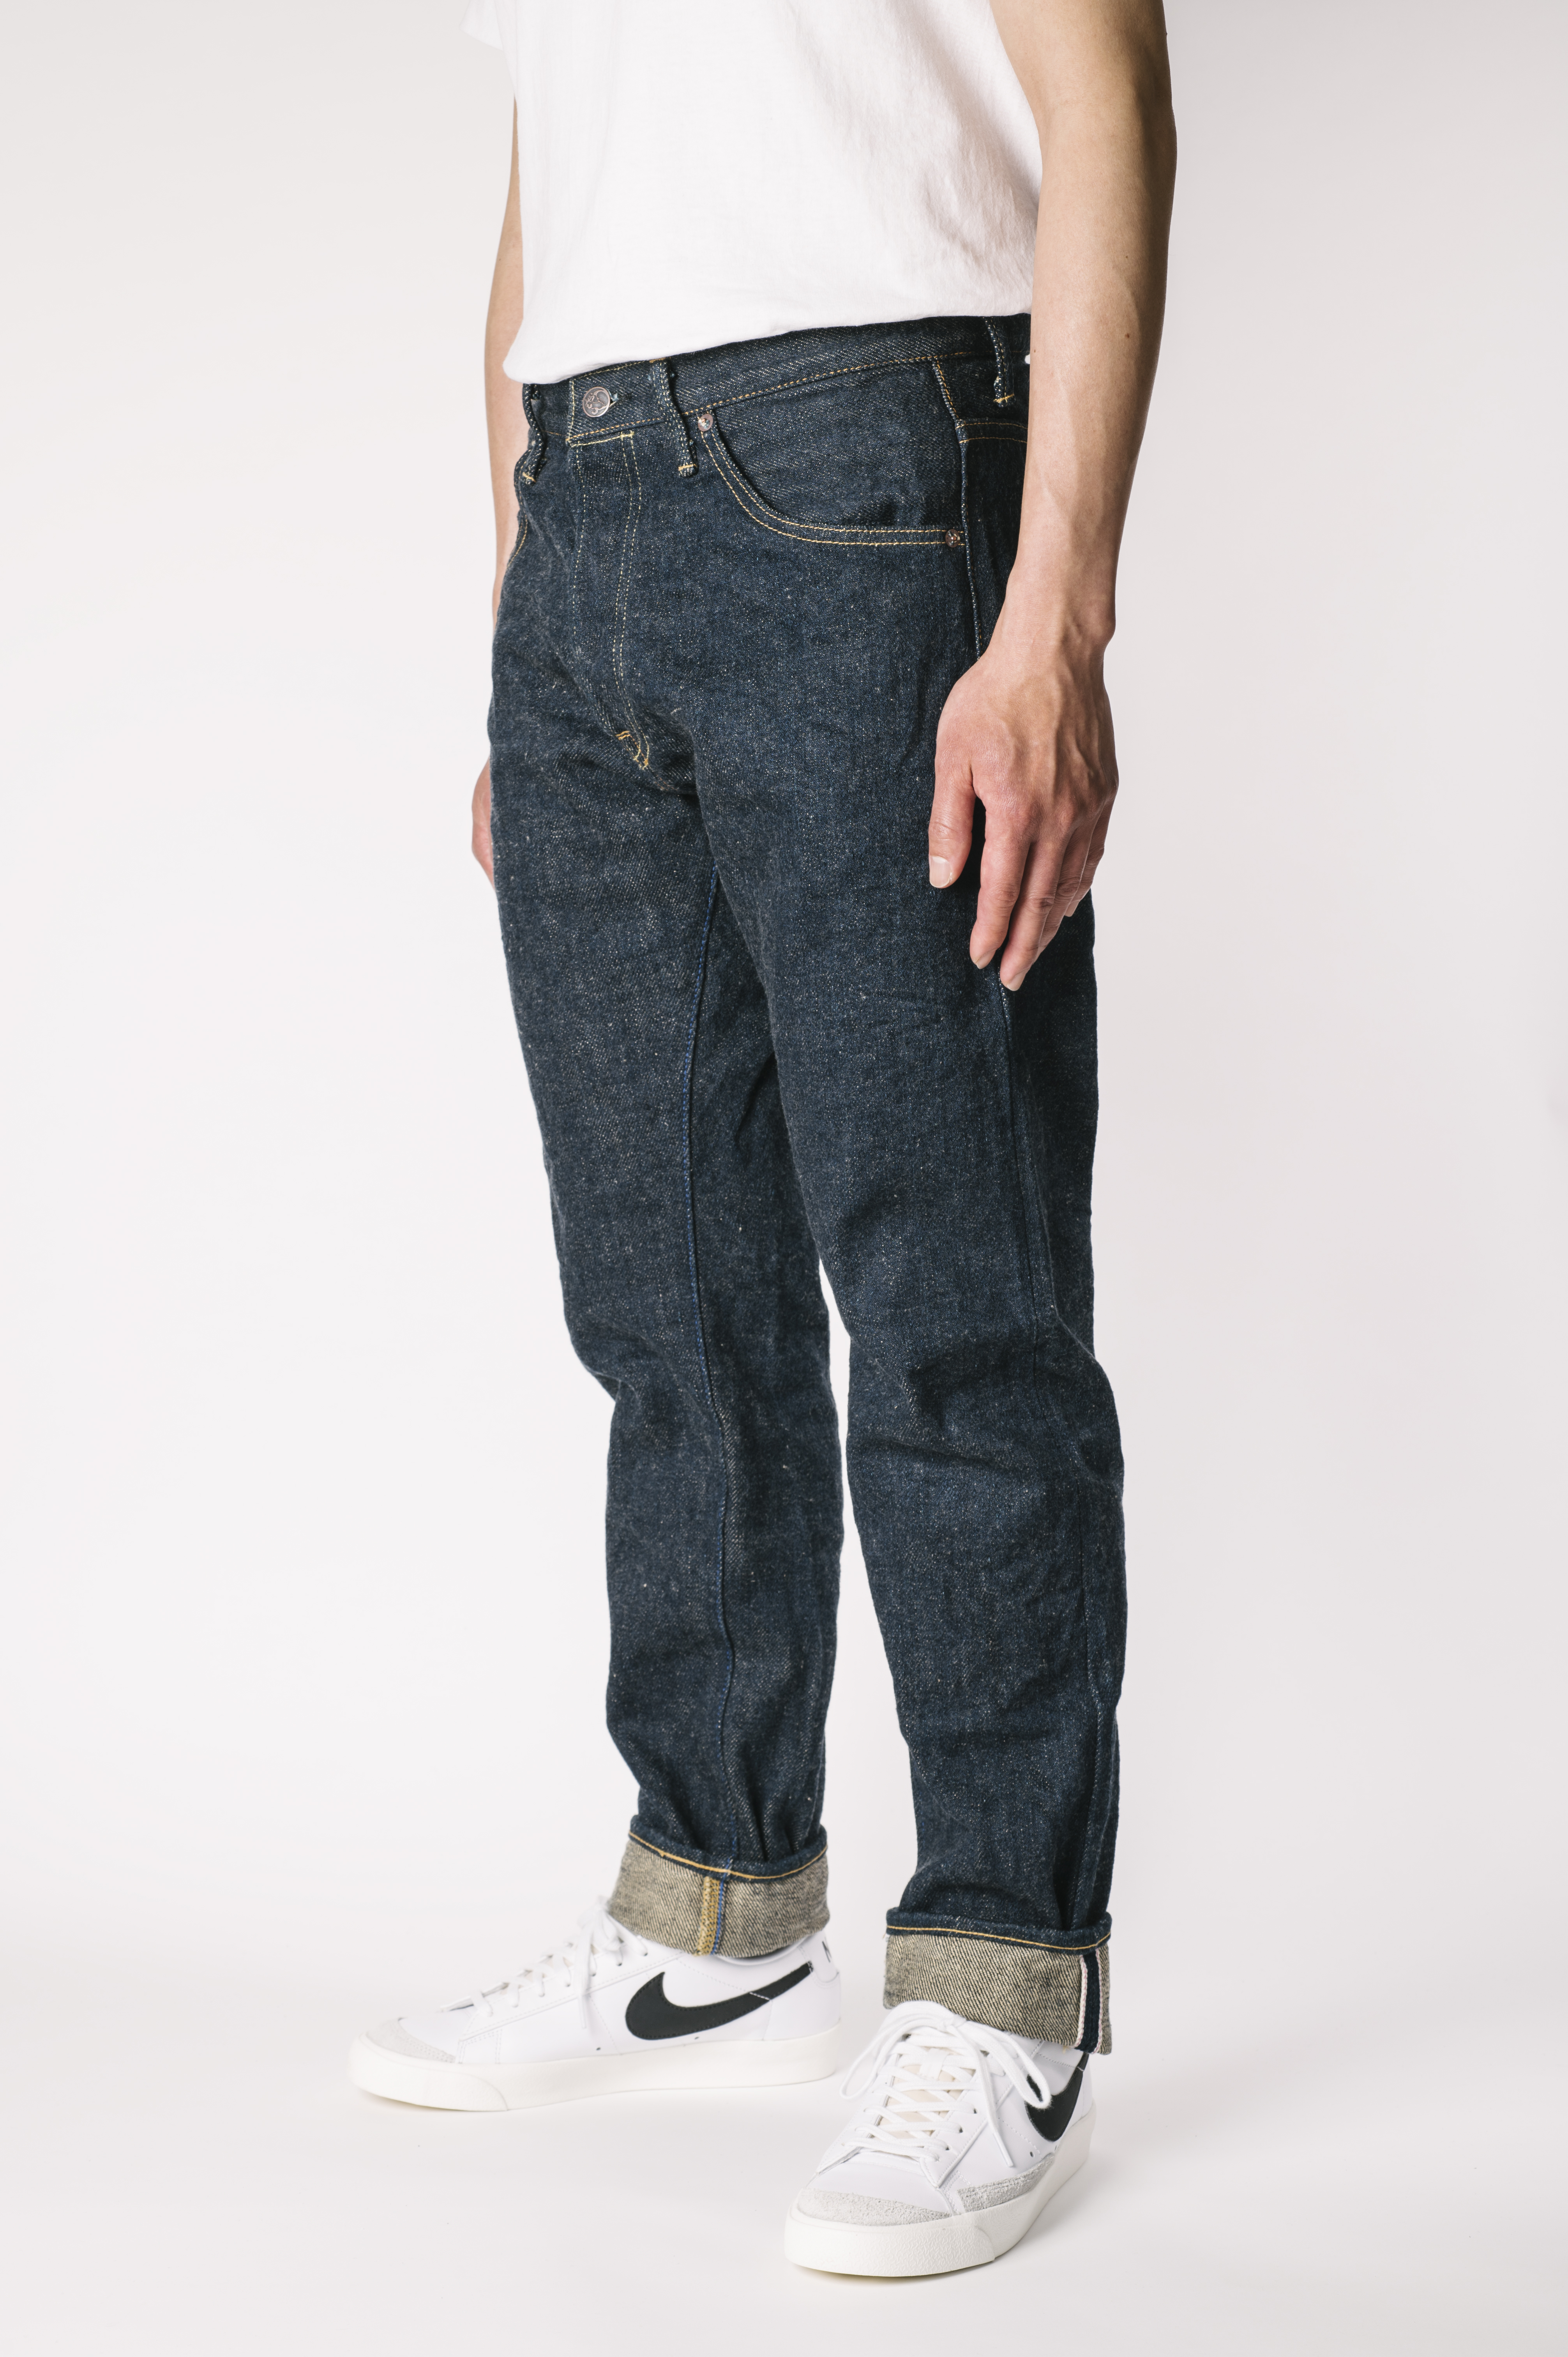 OTHT ONI x TANUKI Collaboration 21.5oz Secret Denim High Rise Tapered Jeans,, large image number 2